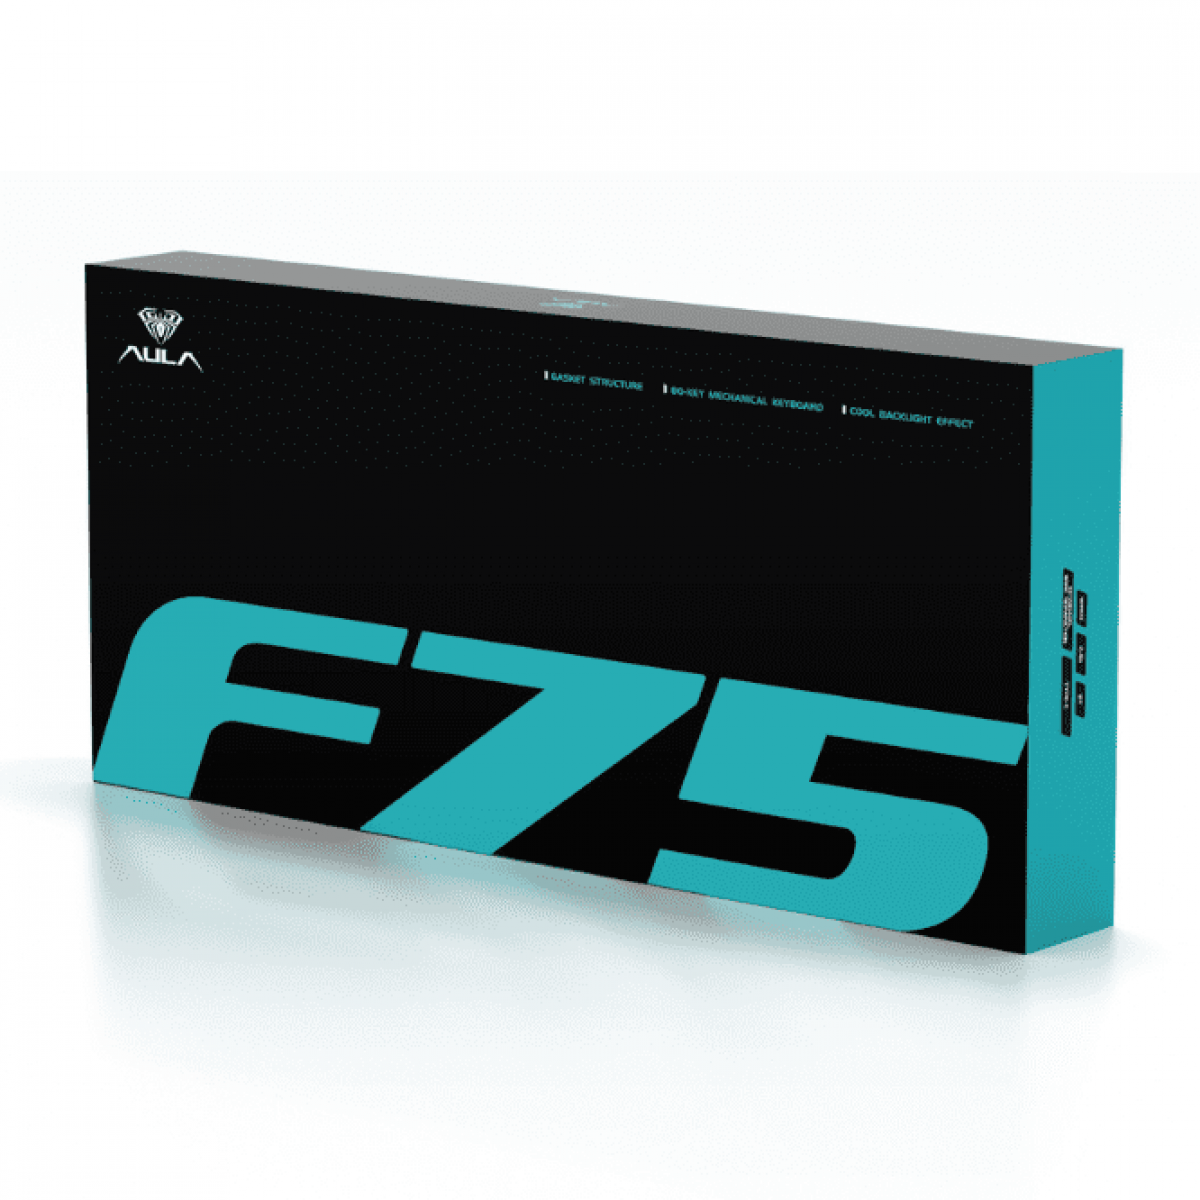 Bàn phím Aula F75 Ice Blue Gaming | Không dây - Reaper Switch - RGB